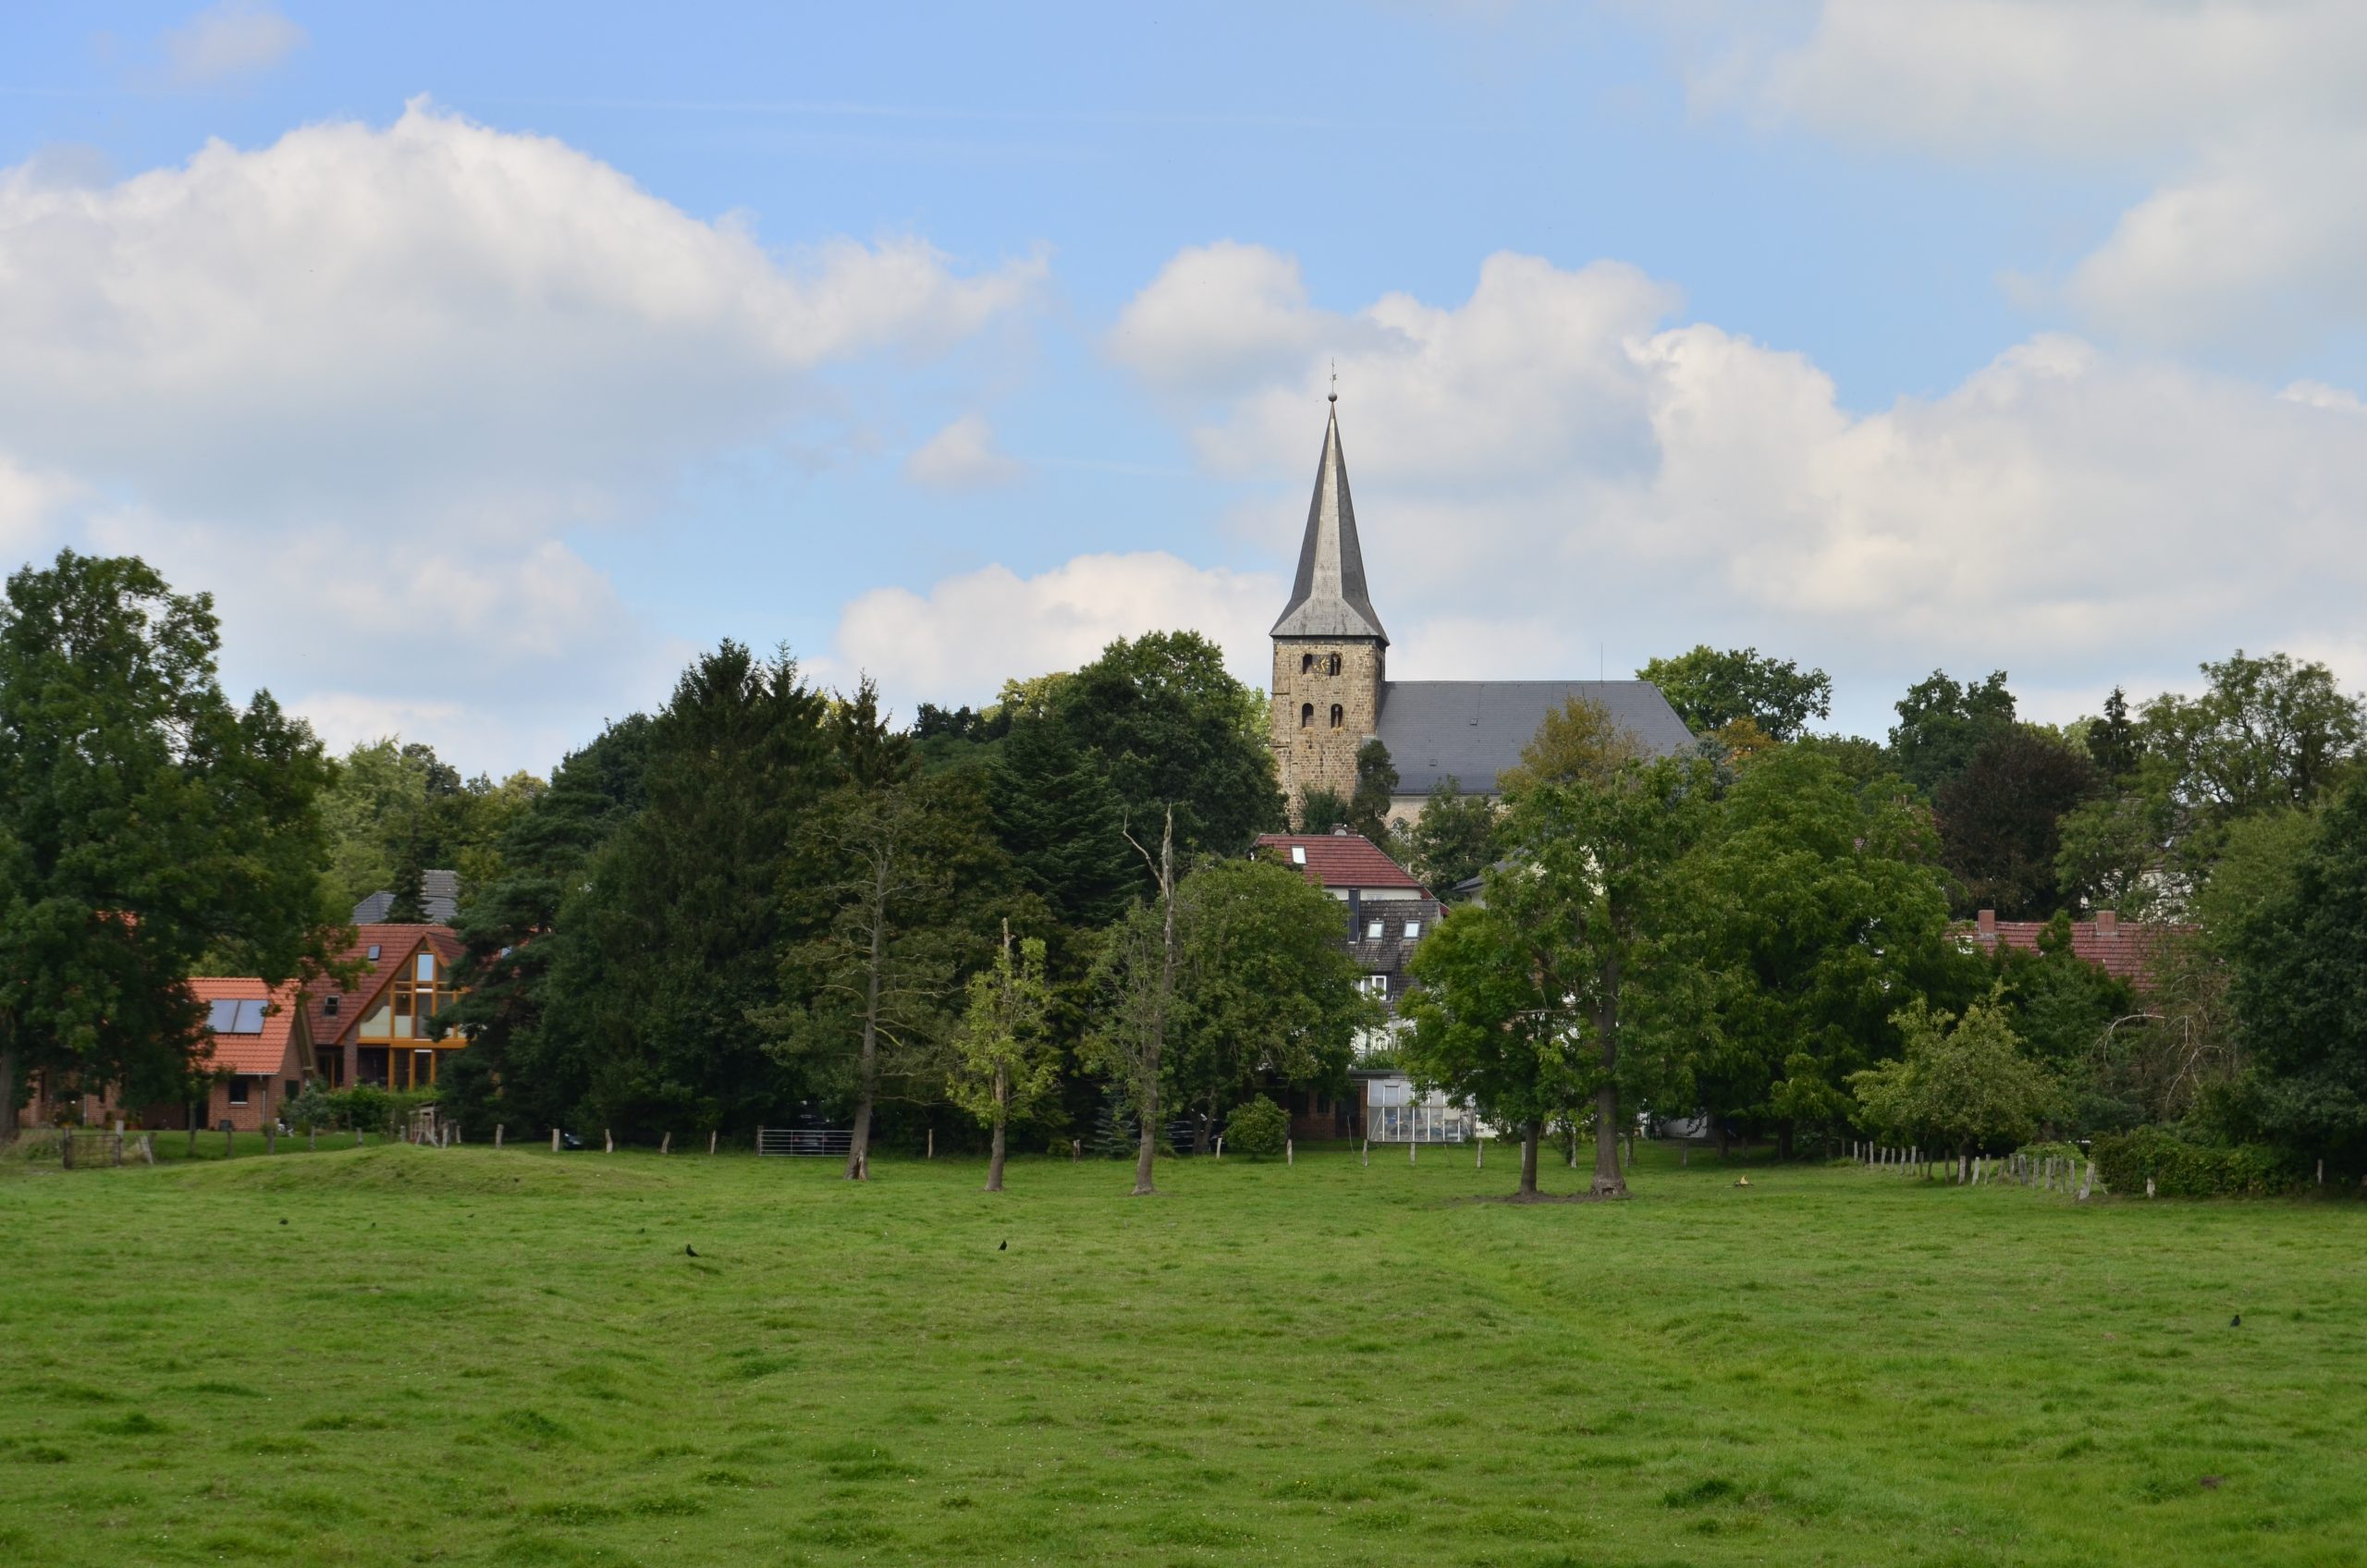 grüne Wiese von Burglesum. Im Hintergrund ragt der Kirchturm auf